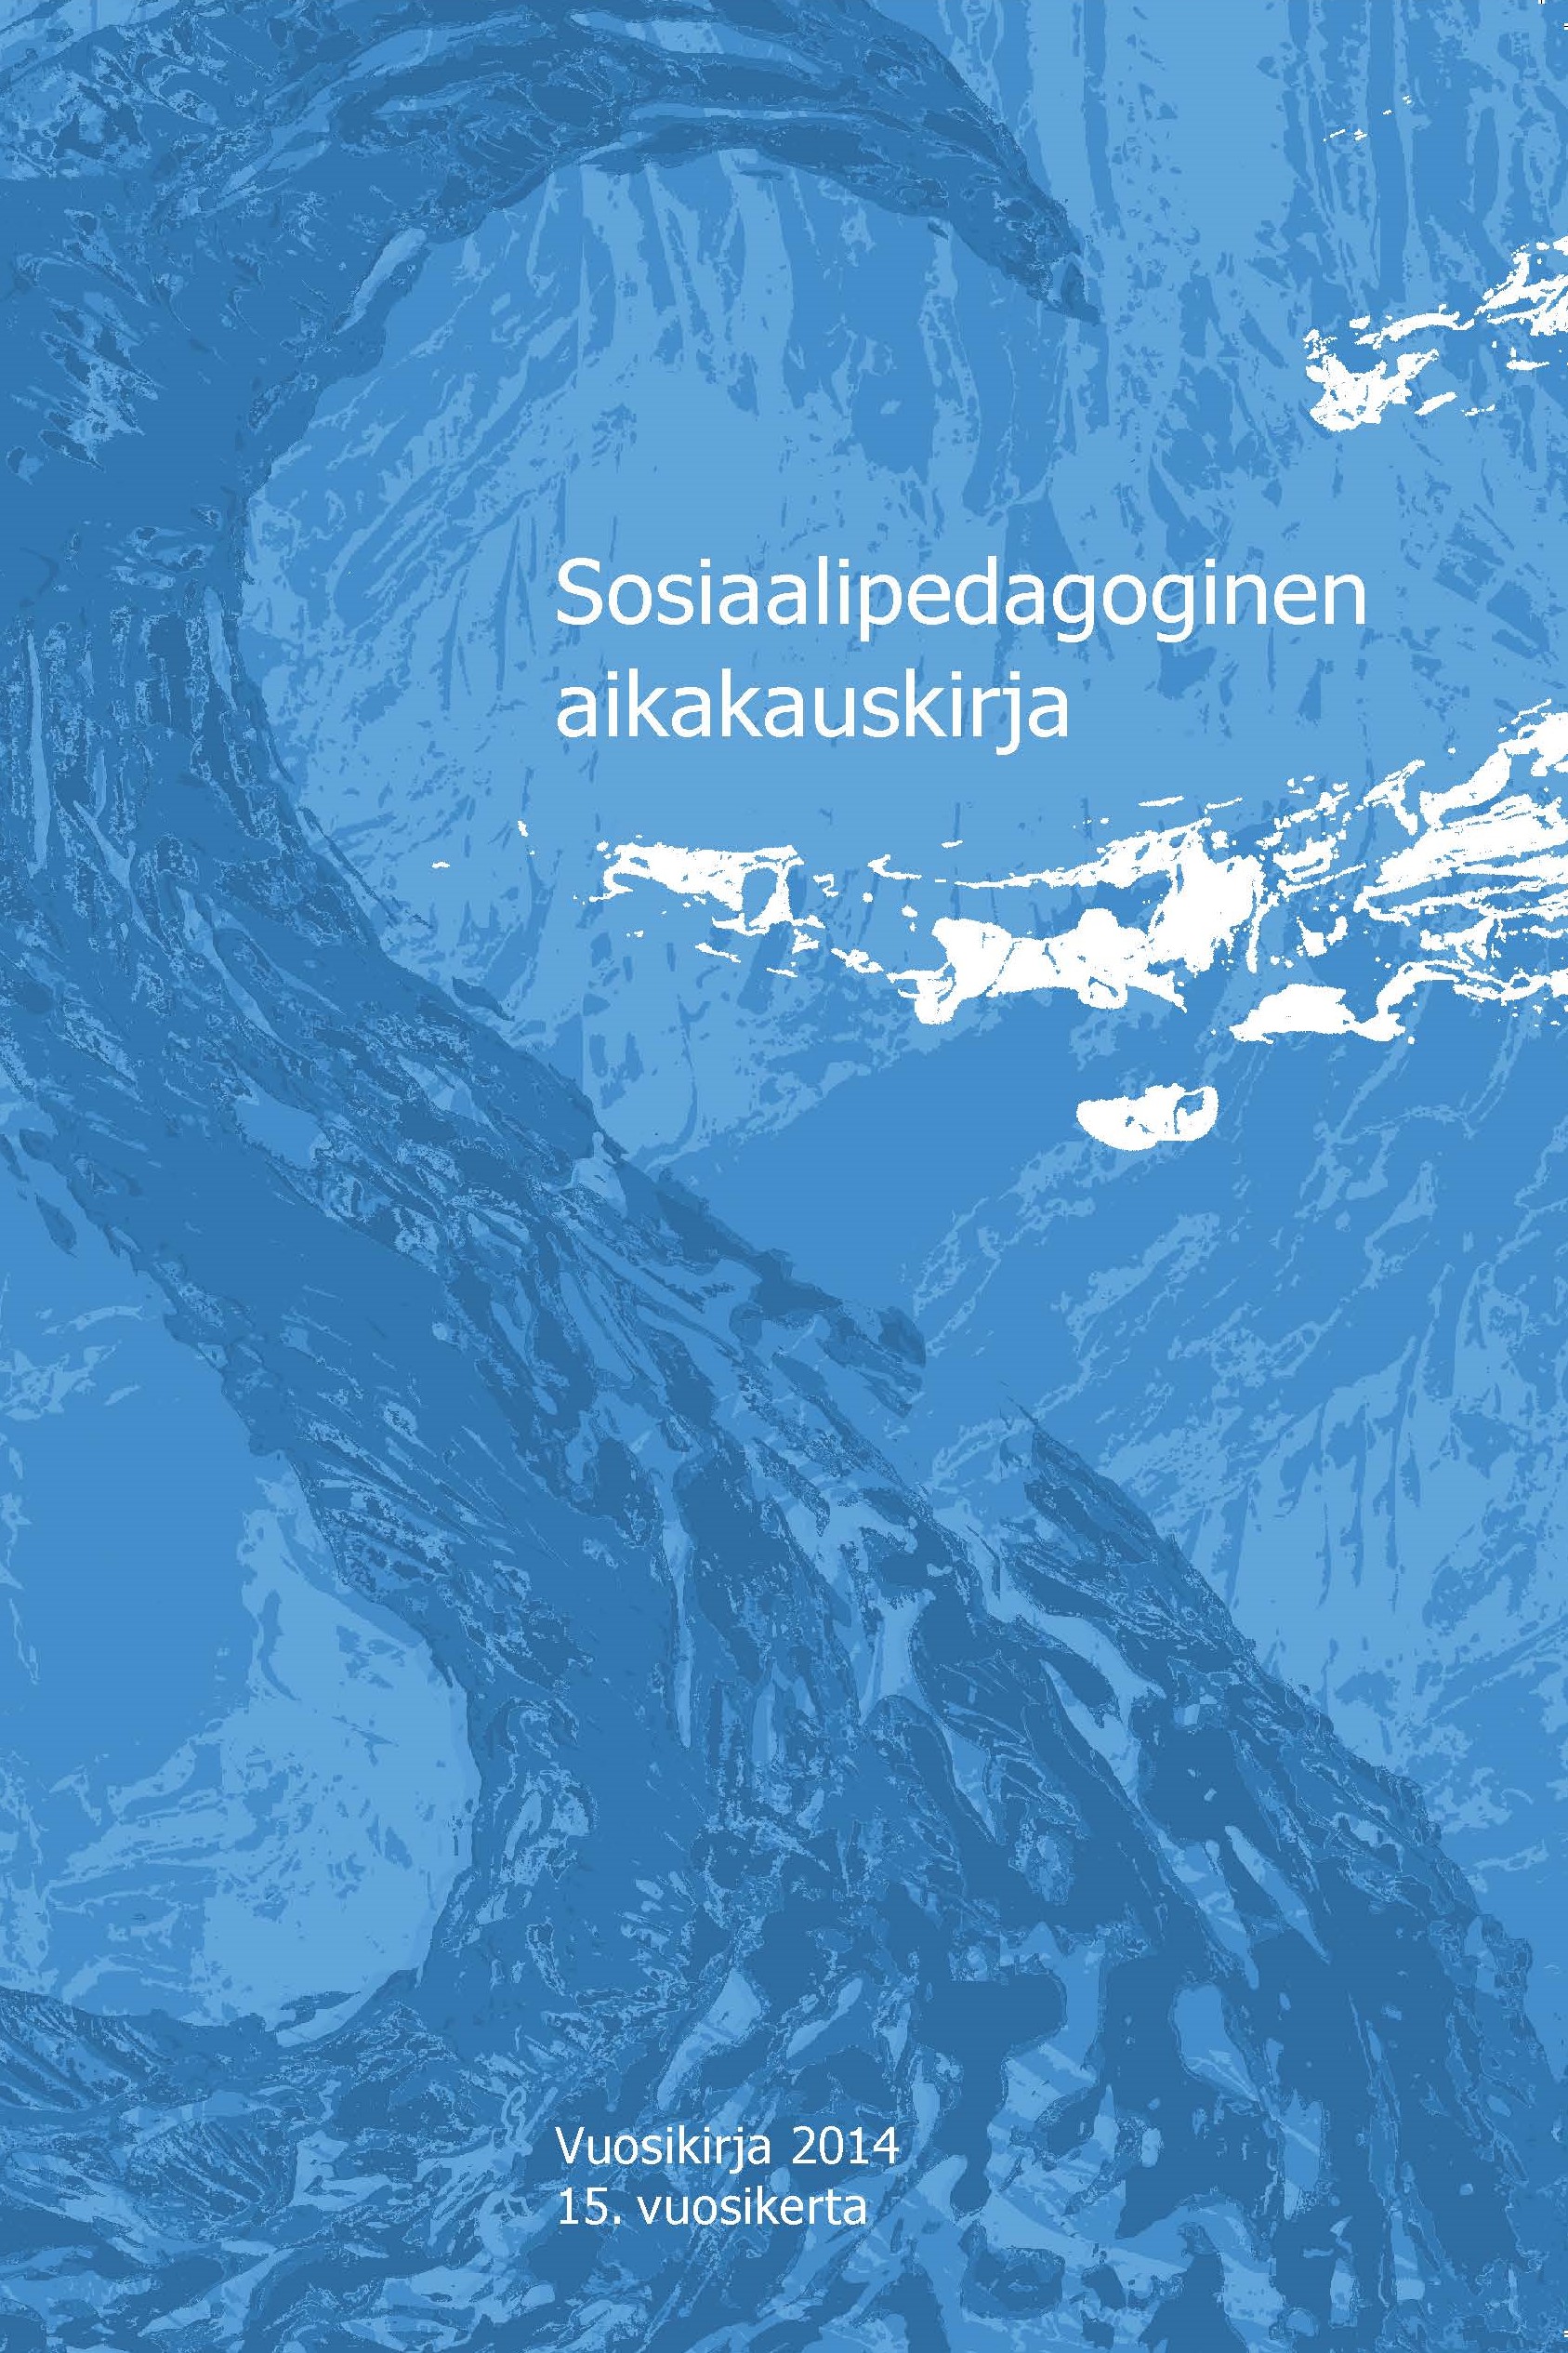 					Visa Vol 15 (2014): Sosiaalipedagoginen aikakauskirja, vuosikirja 2014
				